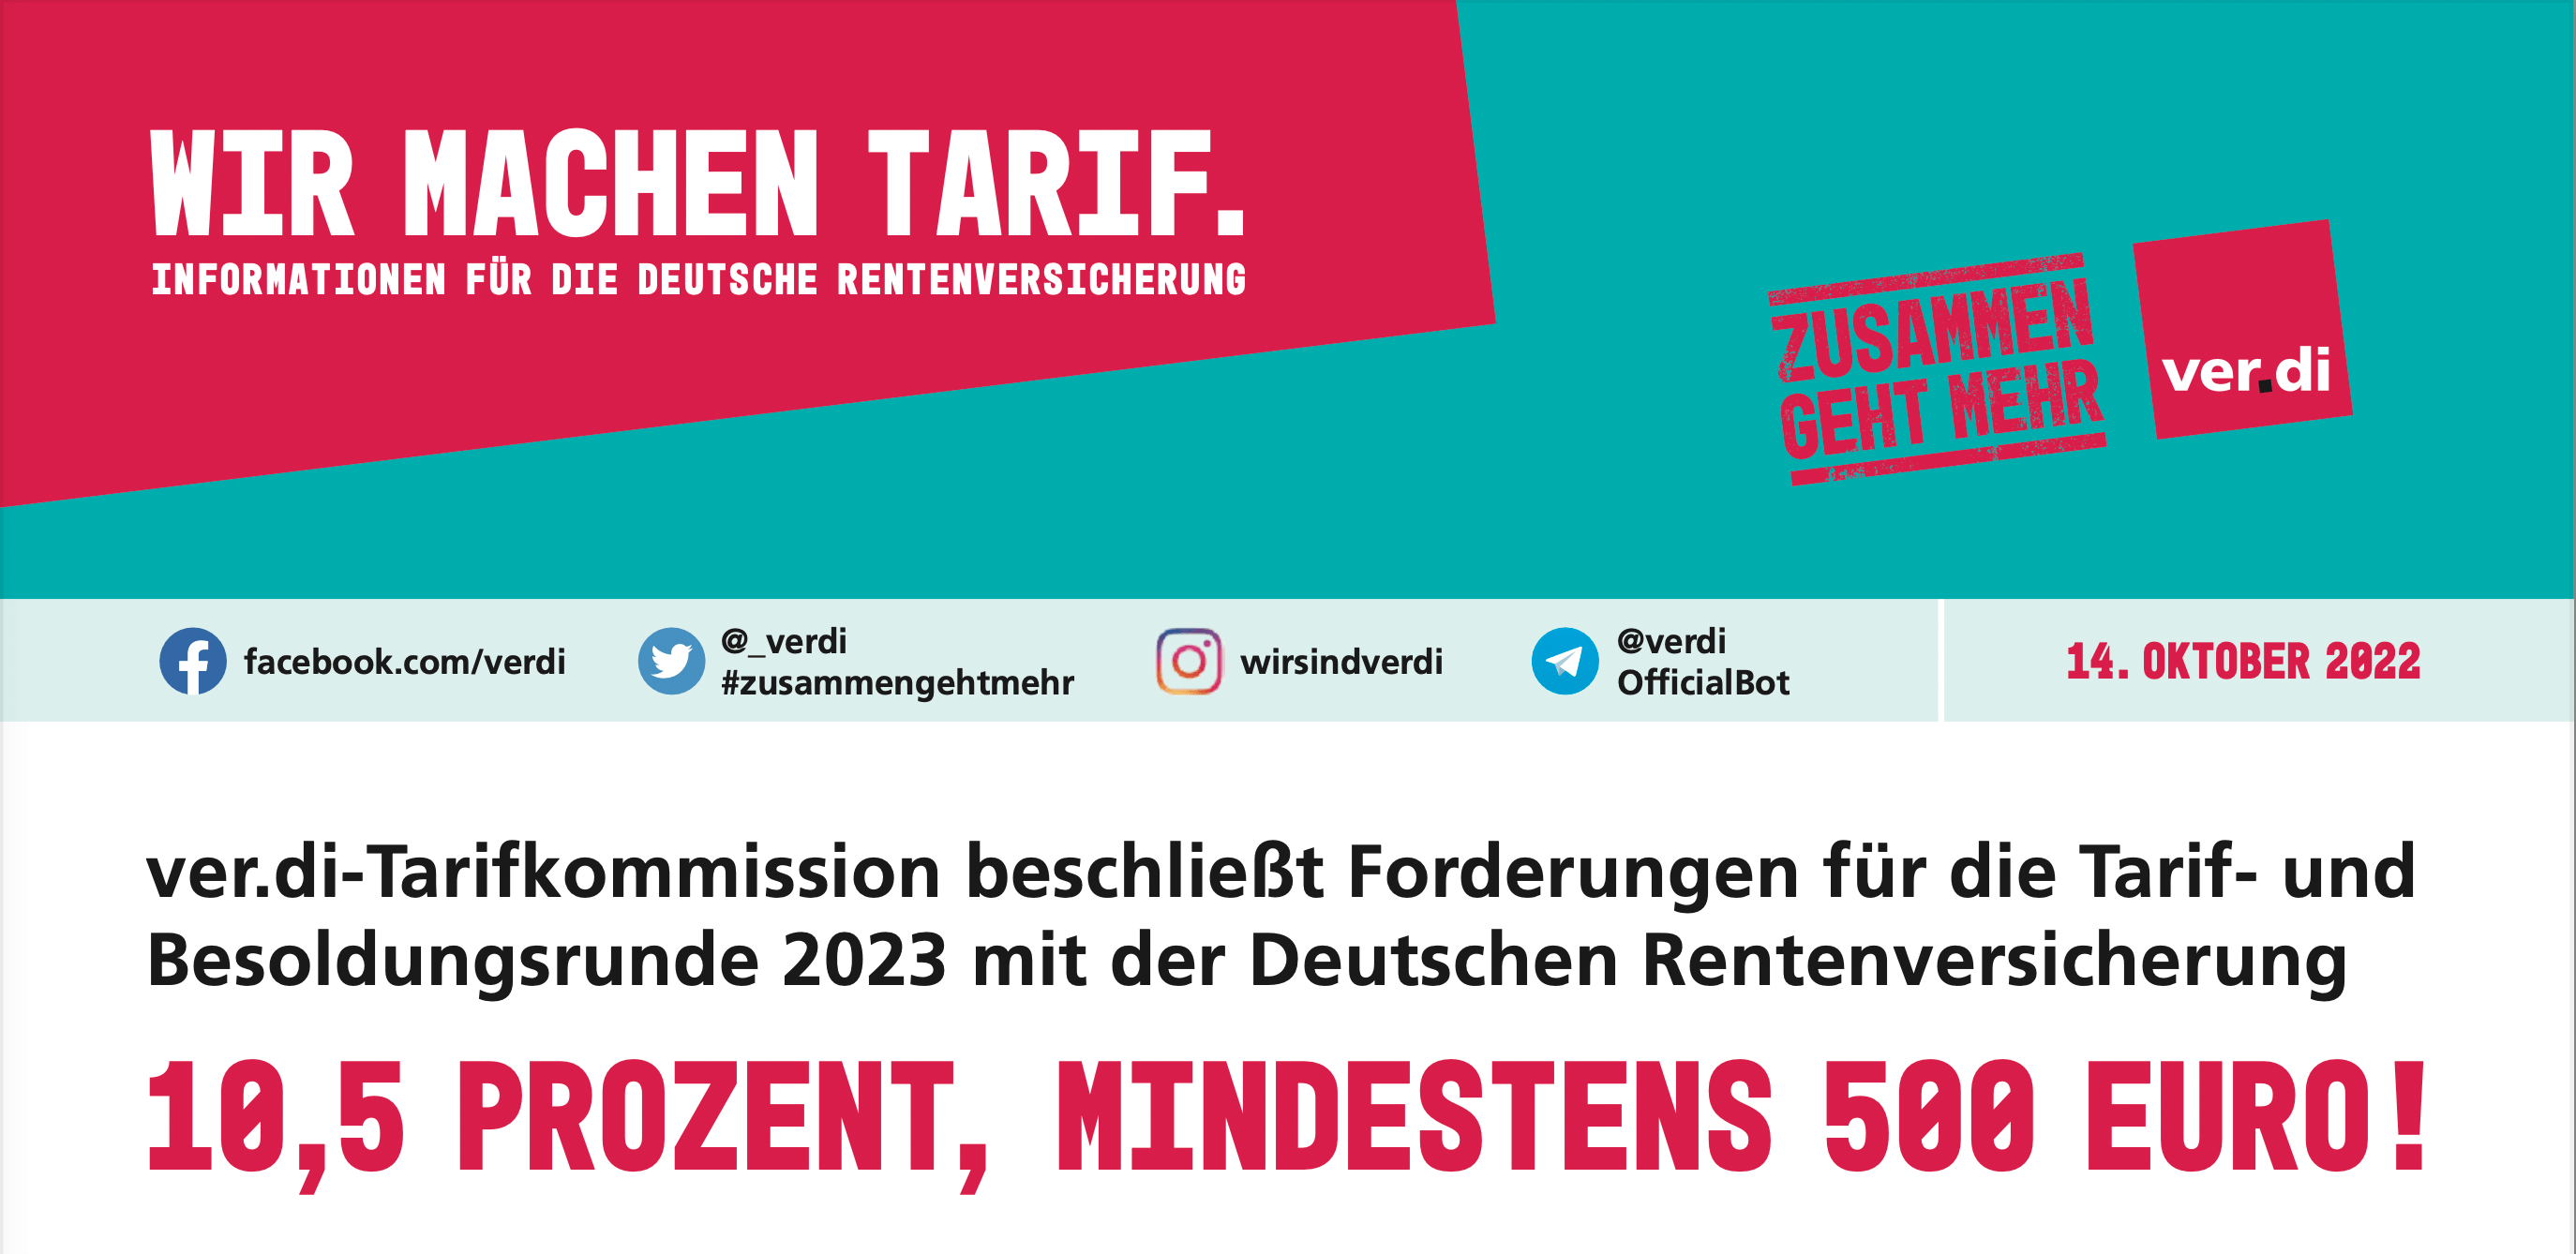 ver.di-Tarifkommission beschließt Forderungen für die Tarif- und Besoldungsrunde 2023 mit der Deutschen Rentenversicherung (14.10.2022)